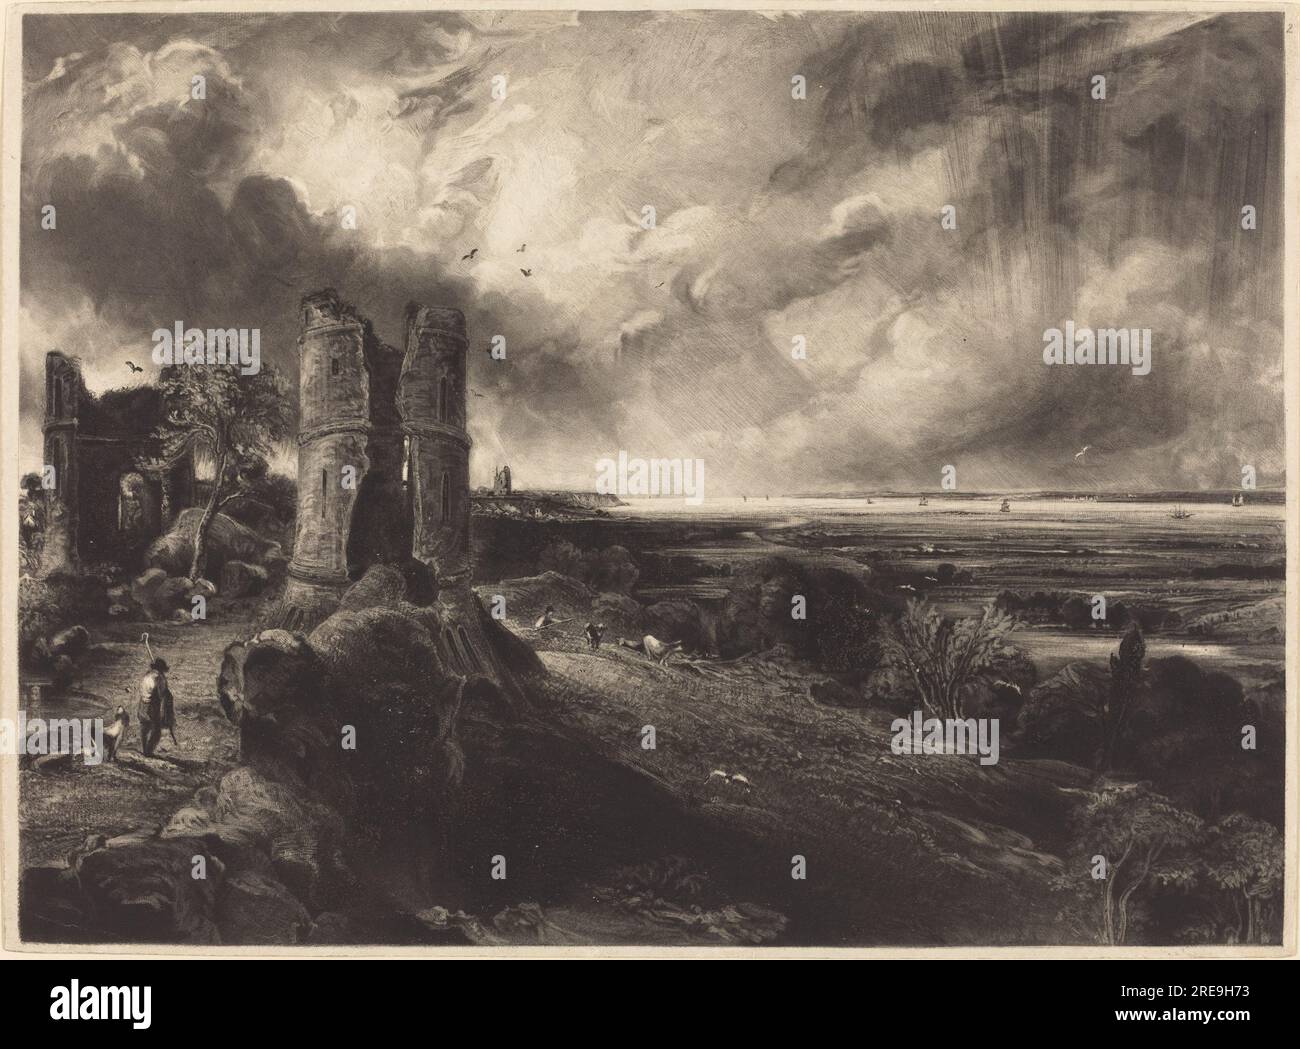 David Lucas d'après John Constable, Hadleigh Castle (Grande assiette), 1830 et 1832, mezzotinte [épreuve de progrès], assiette : 26,7 x 36,5 cm (10 1/2 x 14 3/8 po.) feuille : 27,2 x 37,4 cm (10 11/16 x 14 3/4 po) Total (format mat) : 40,6 x 55,9 cm (16 x 22 po), Andrew W. Mellon Fund, 1977.38.1' Banque D'Images